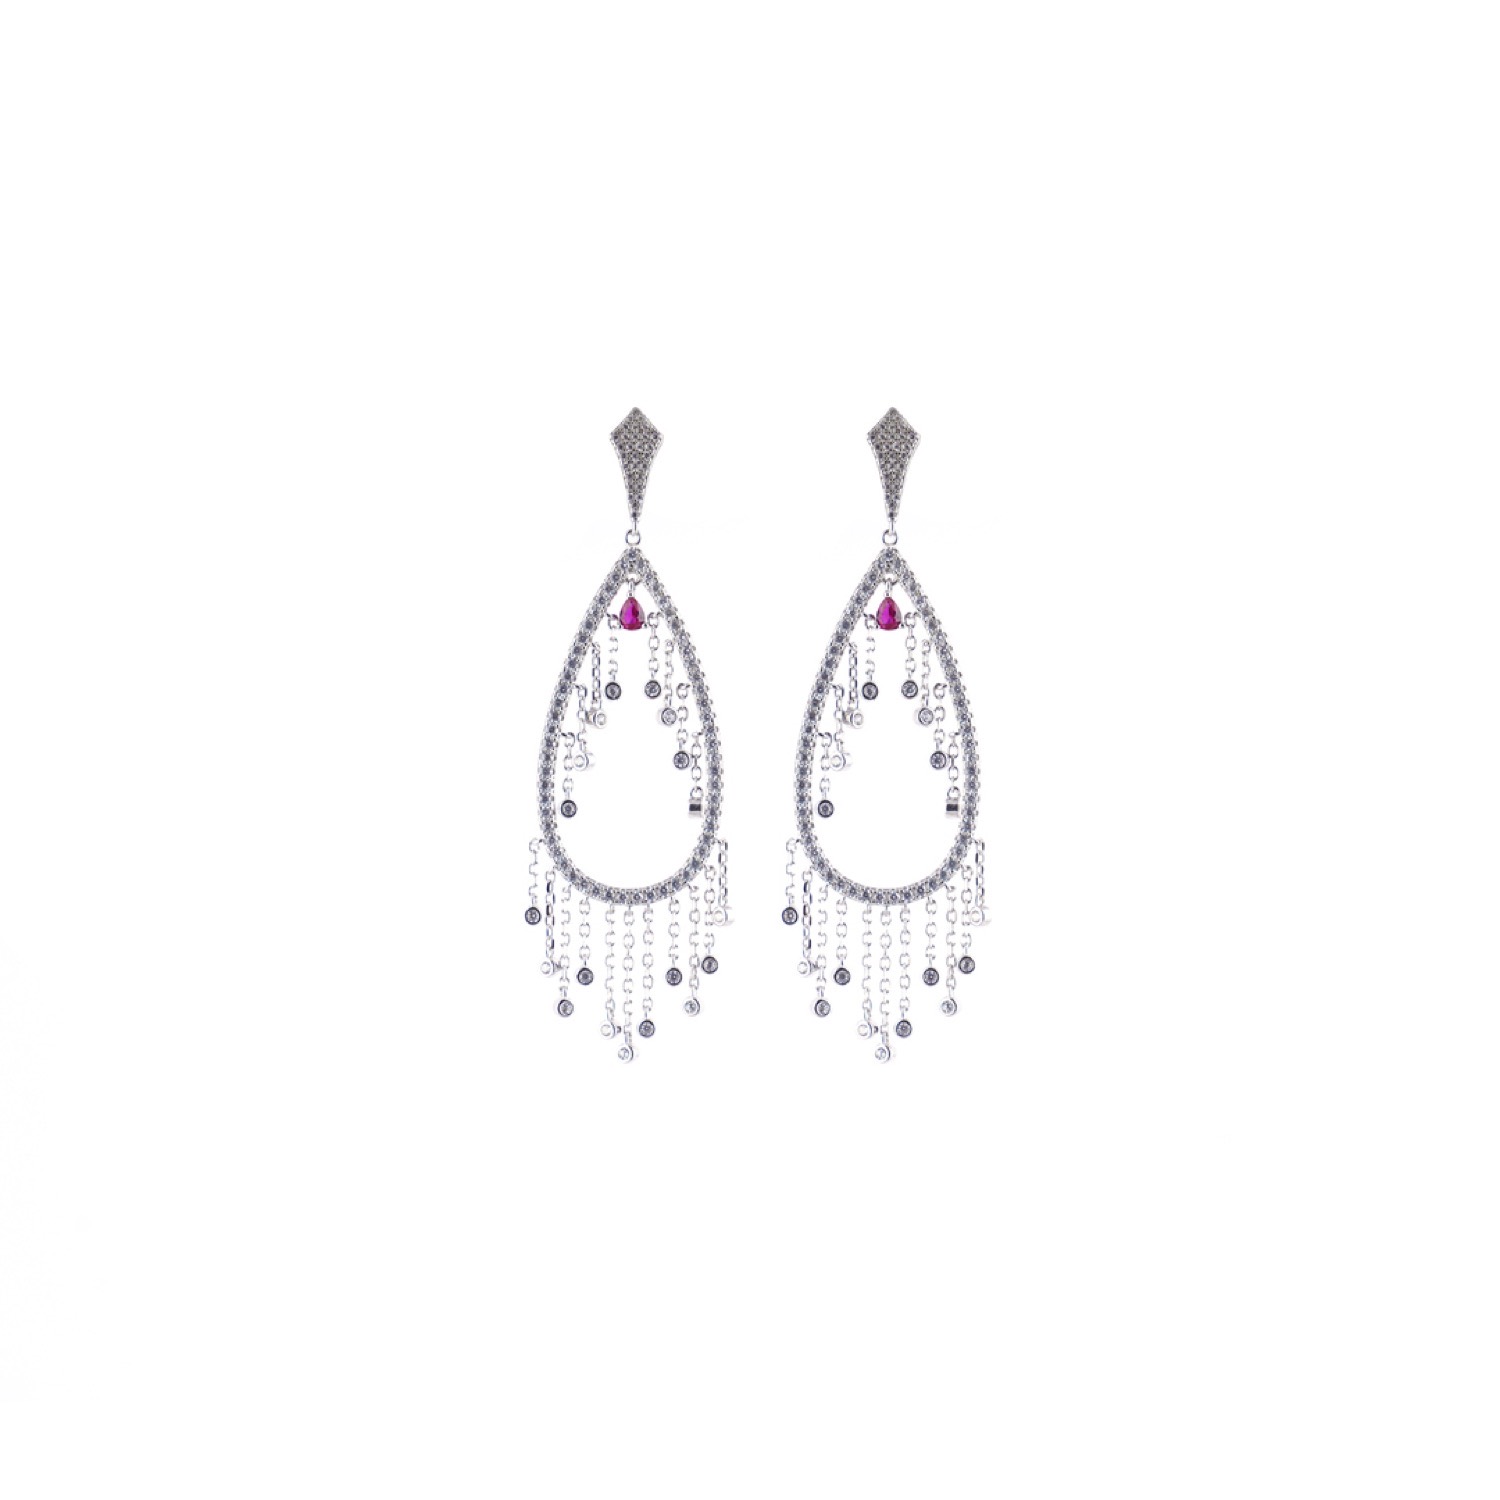 varam_earrings_102022_designer_oval_shaped_white_stone_silver_earrings-1